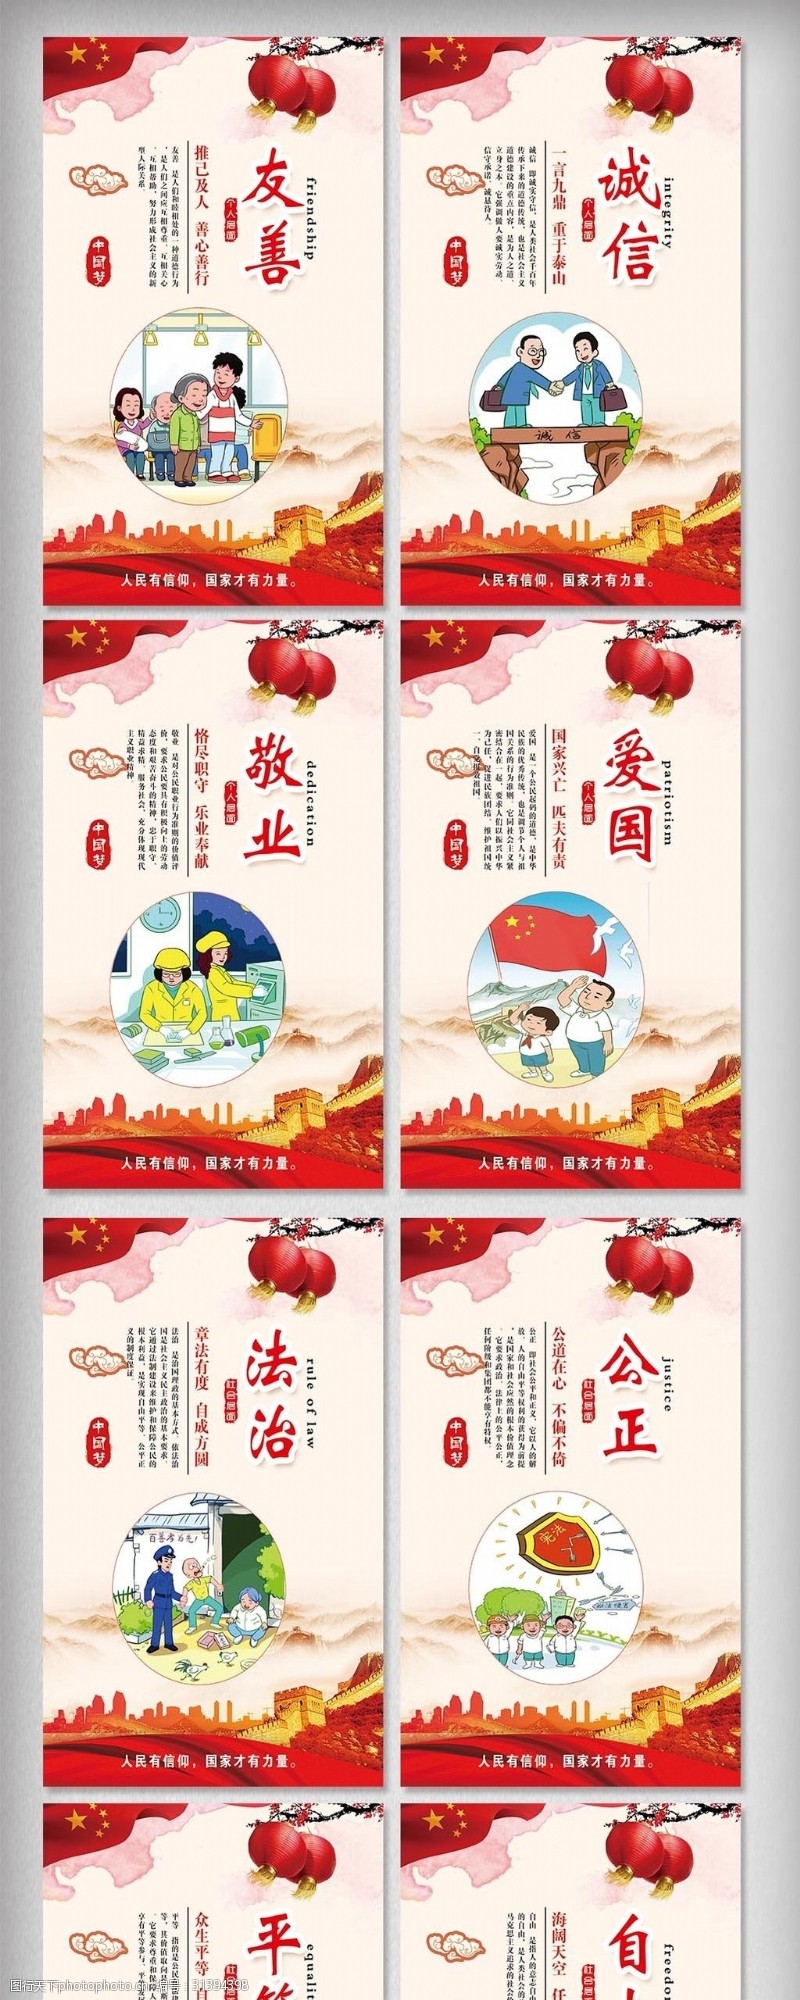 中国梦剪纸创意社会主义核心价值观挂画图片